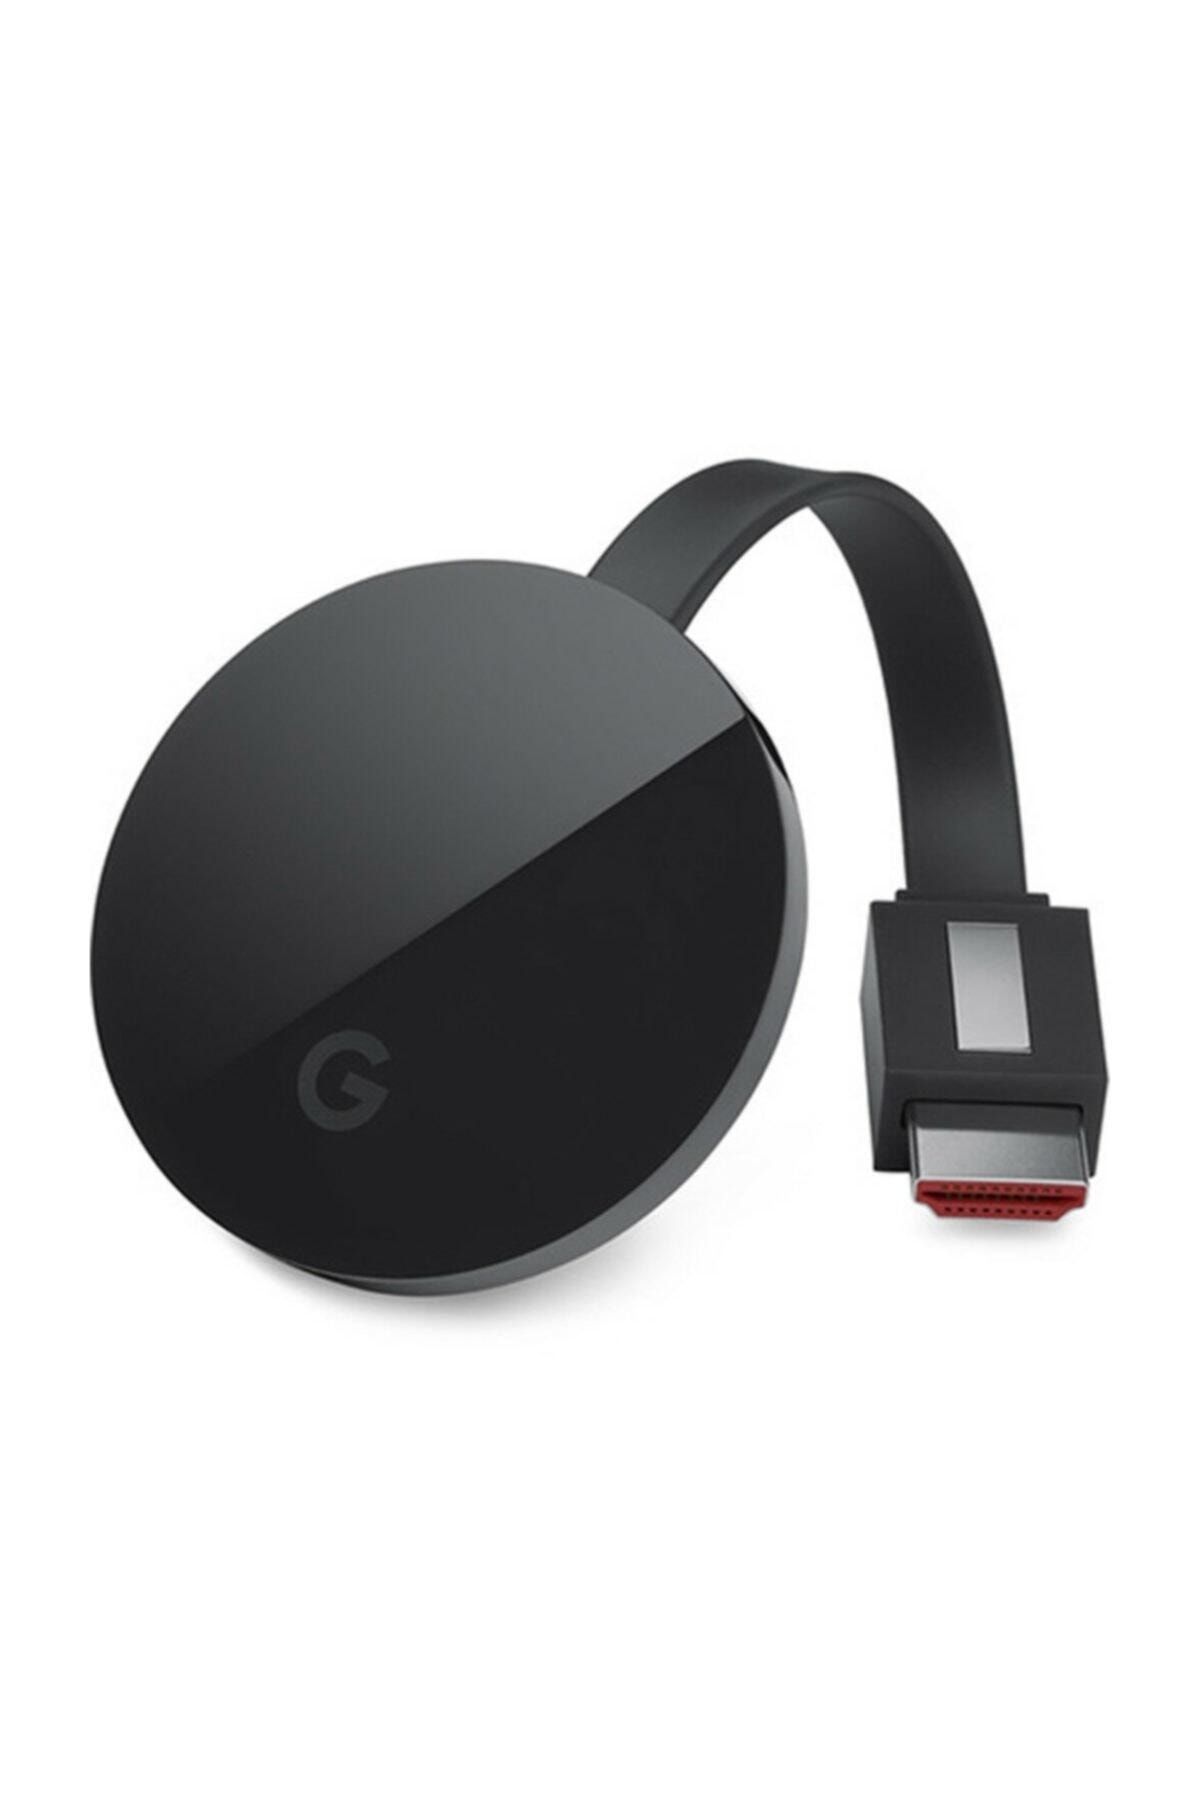 Google Chromecast Ultra 4k Yüksek Çözünürlük